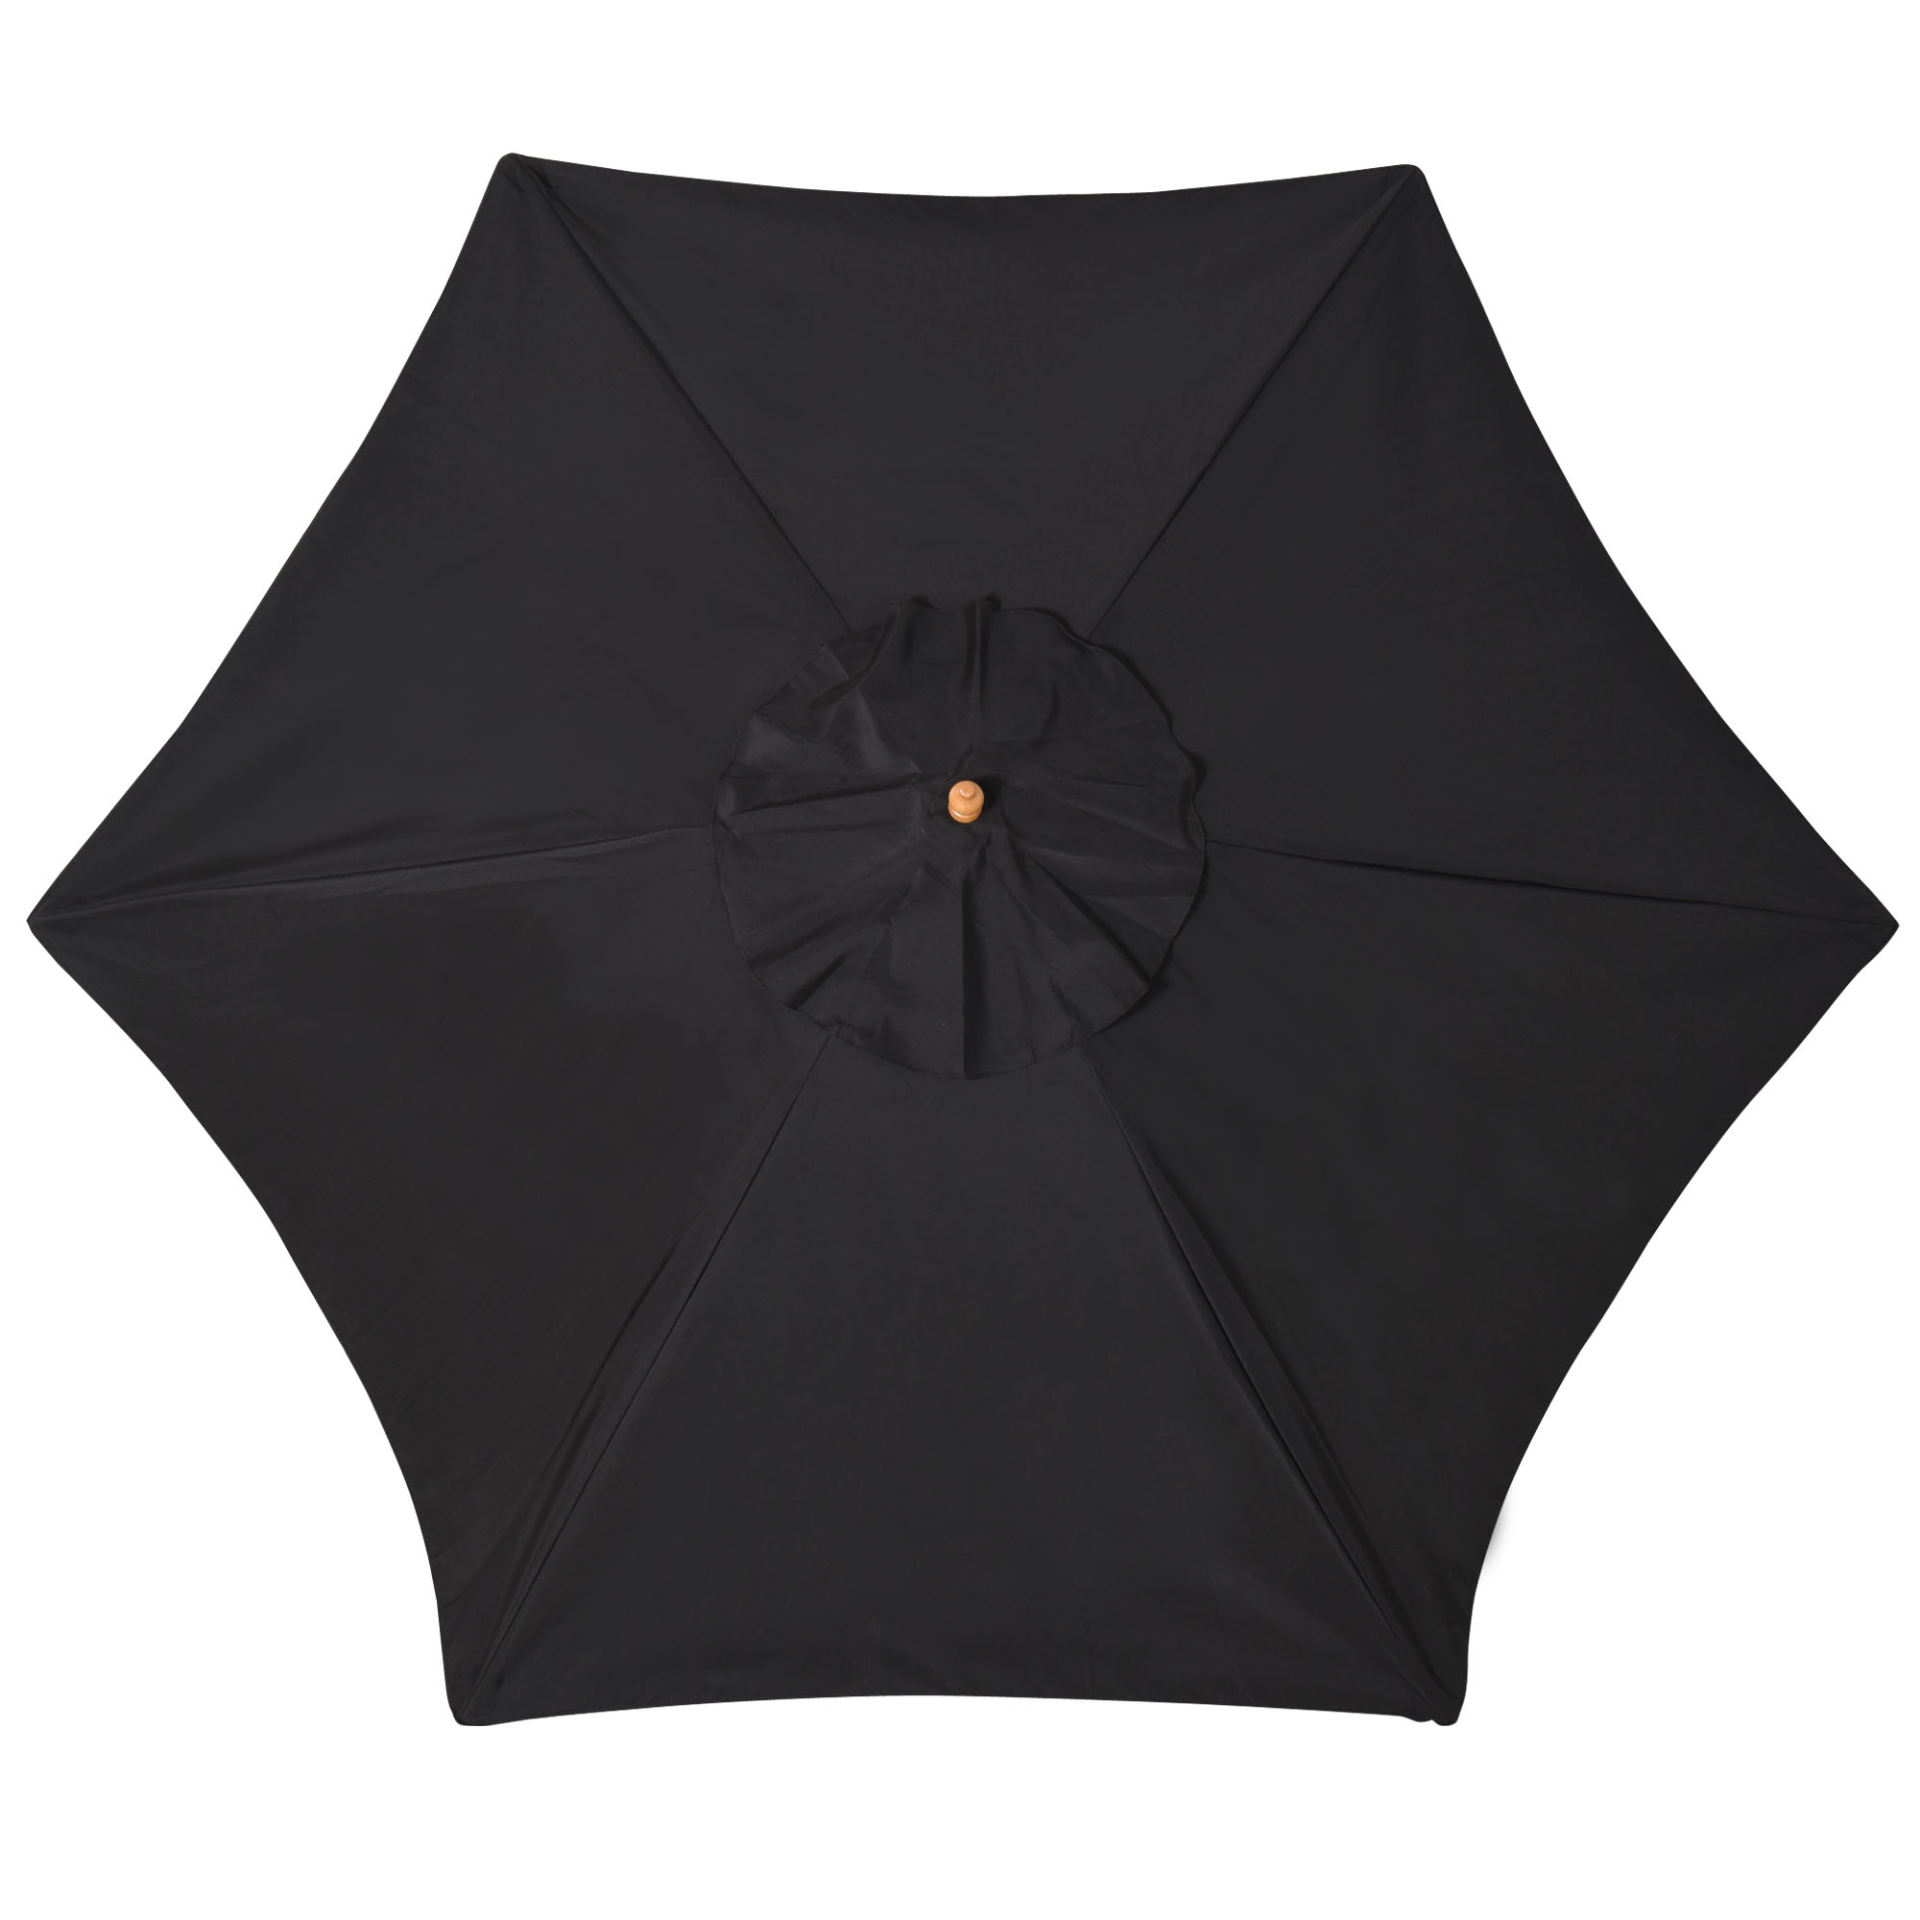 Outsunny 2.5m Wood Garden Parasol Sun Shade Patio Outdoor Wooden Umbrella Canopy Black